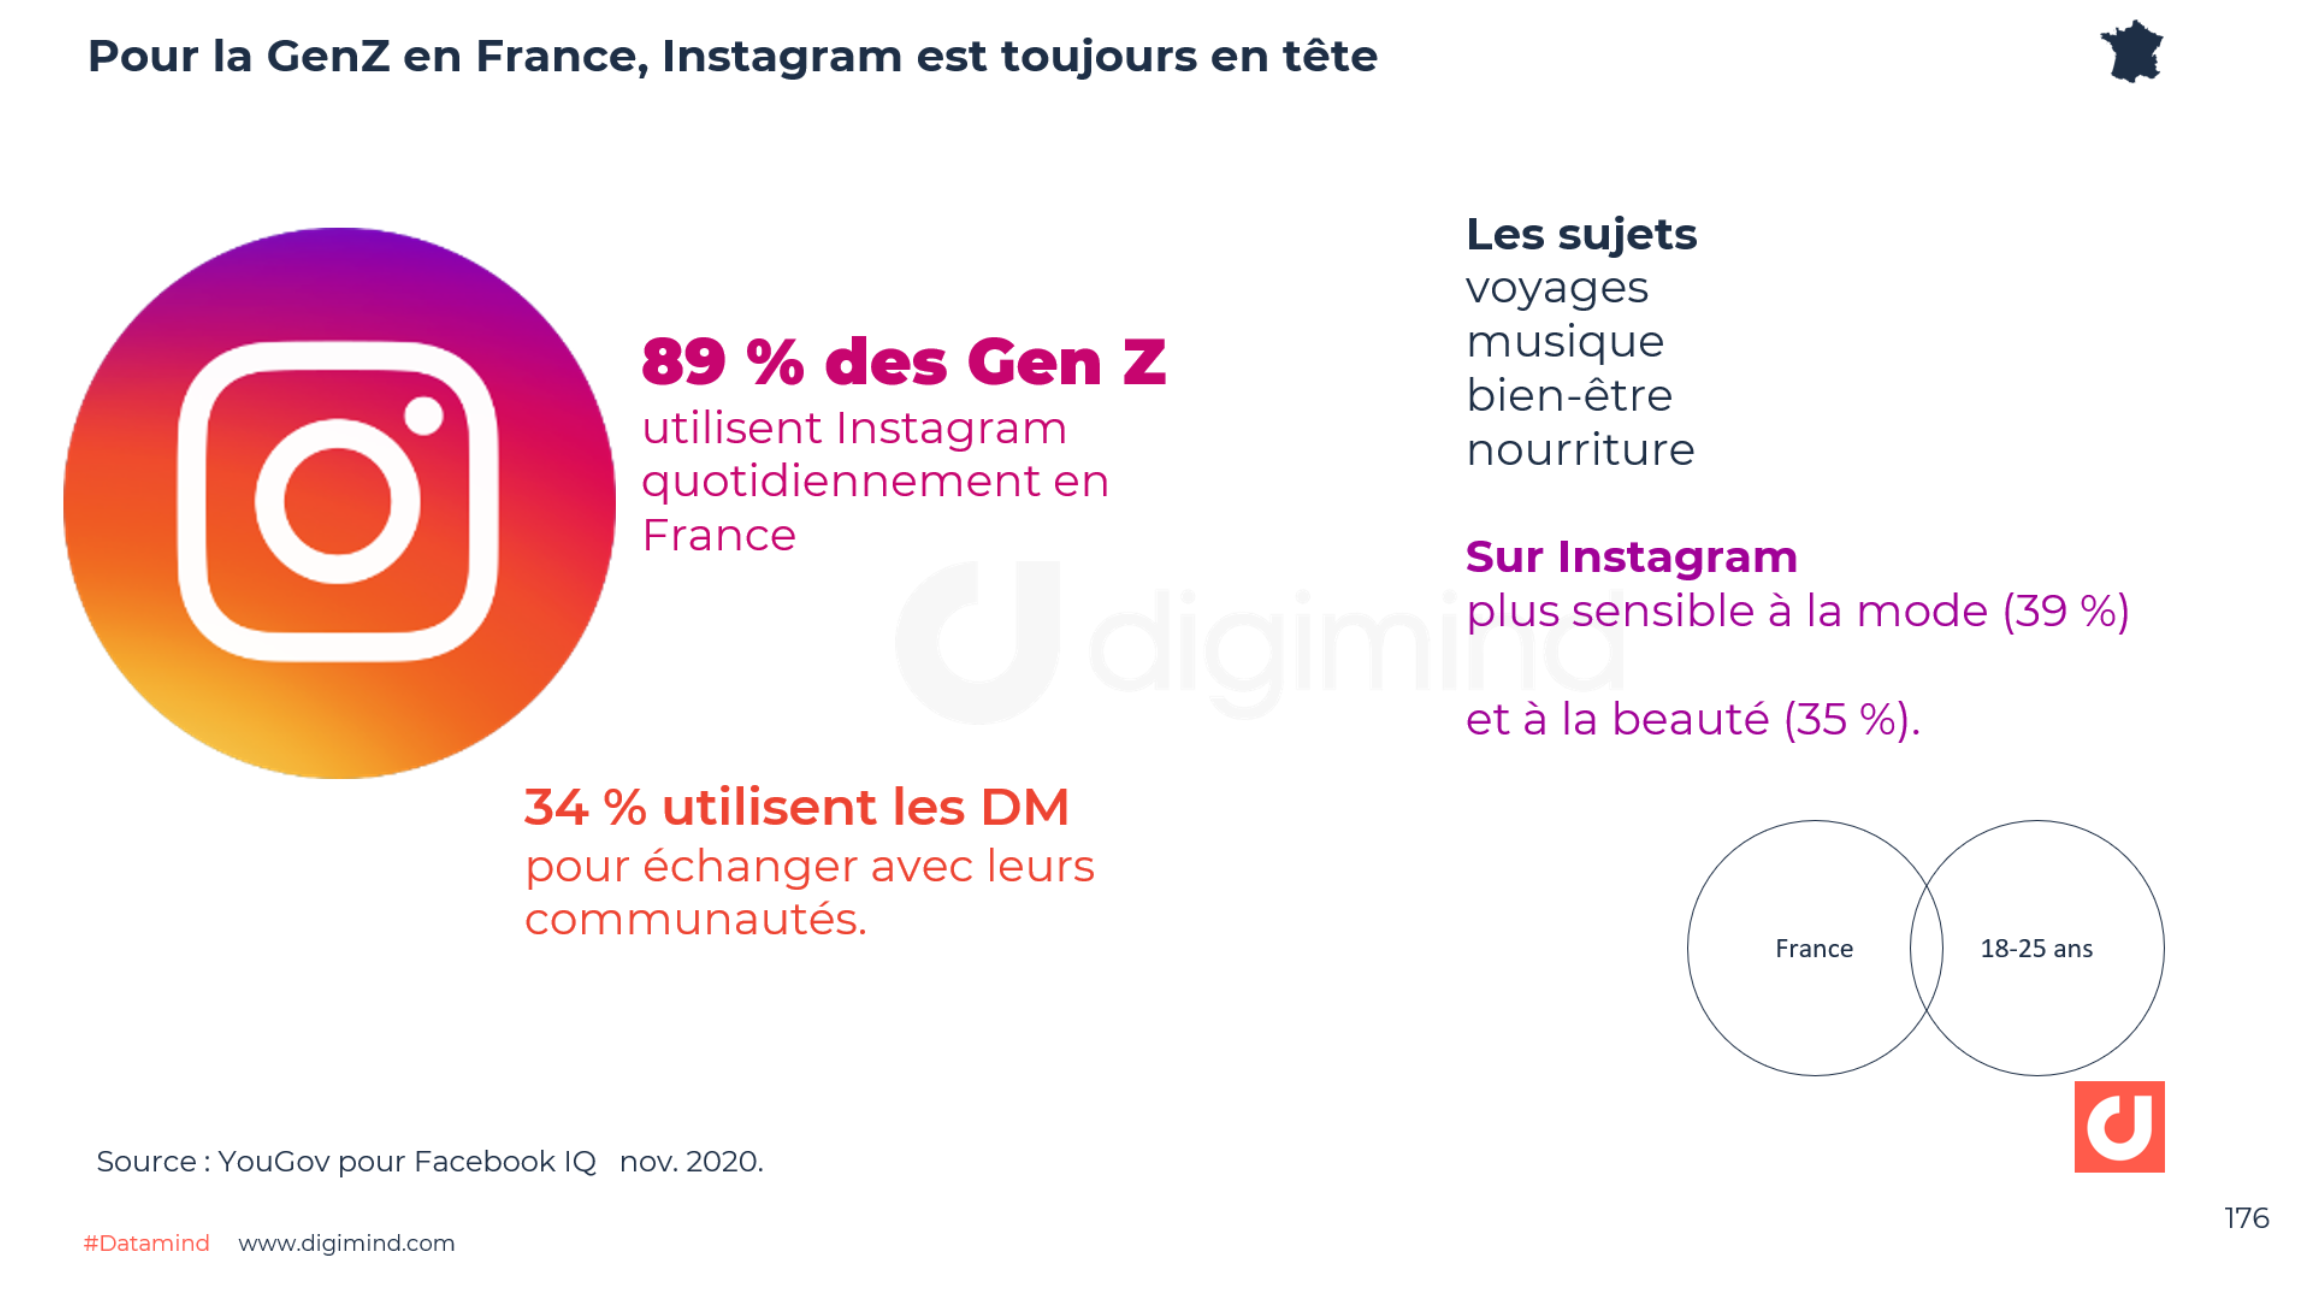 Pour la GenZ en France, Instagram est toujours en tête